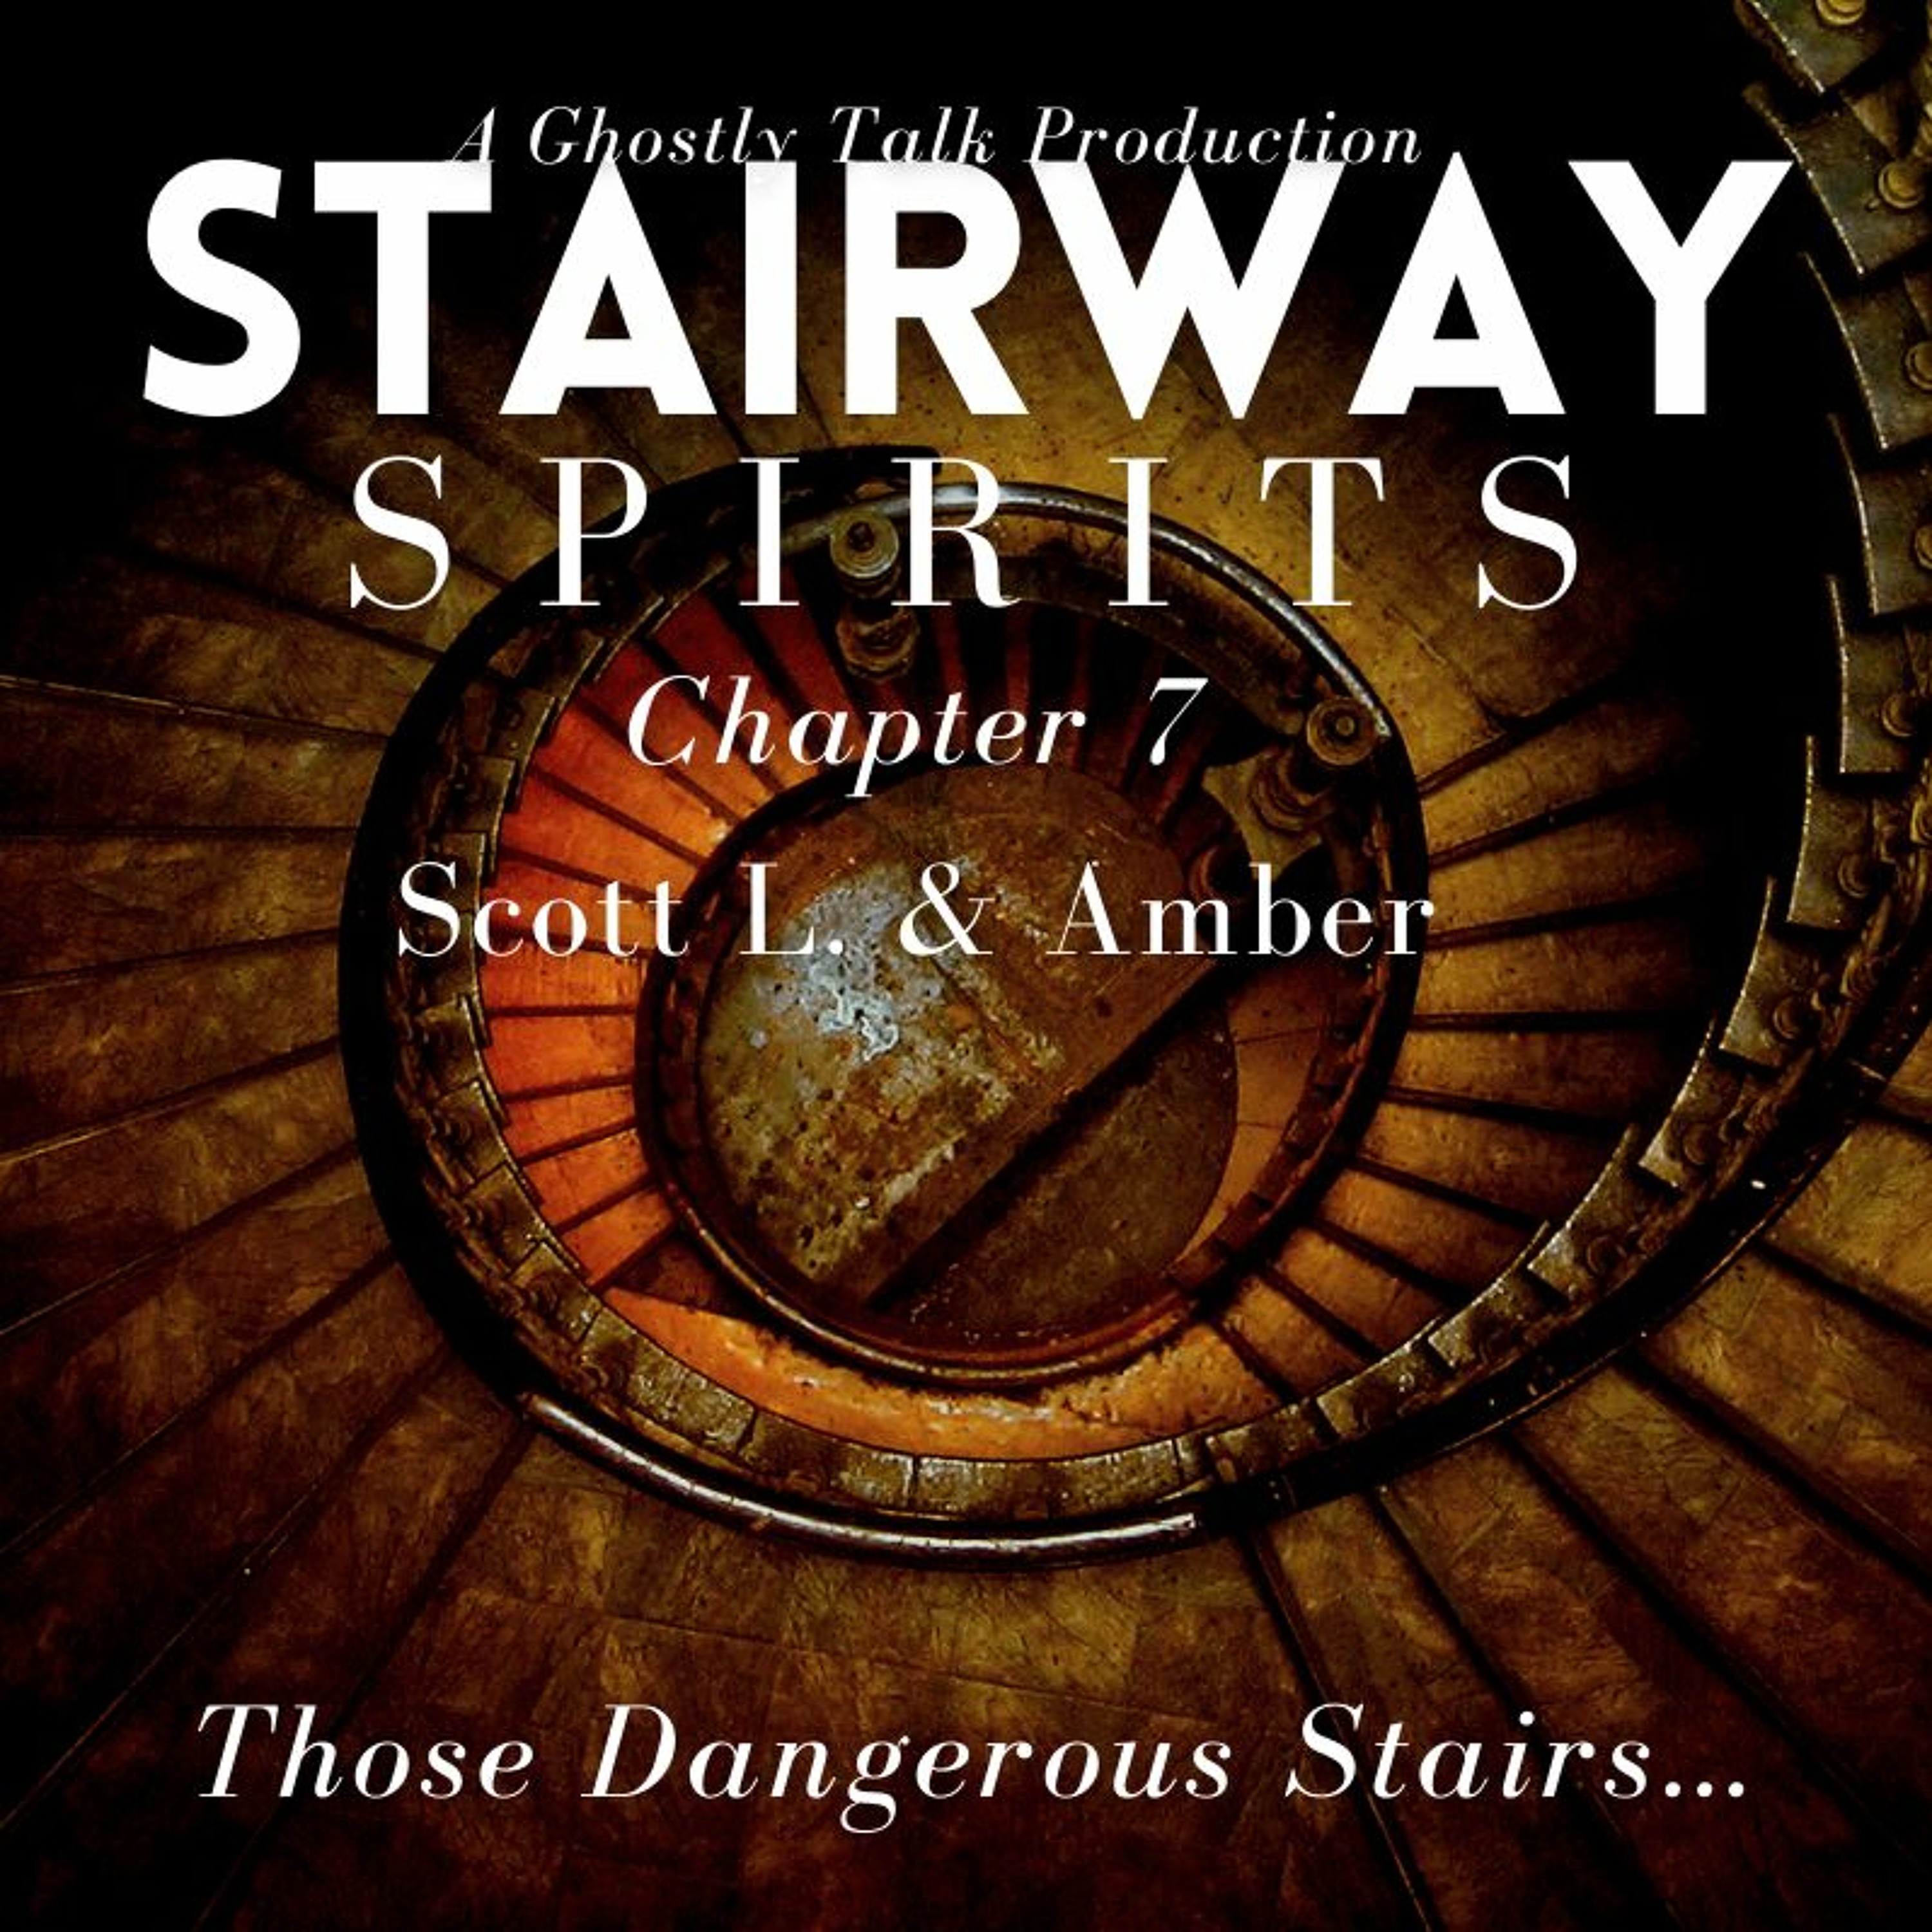 Stairway Spirits Ch. 7 - Scott L. & Amber